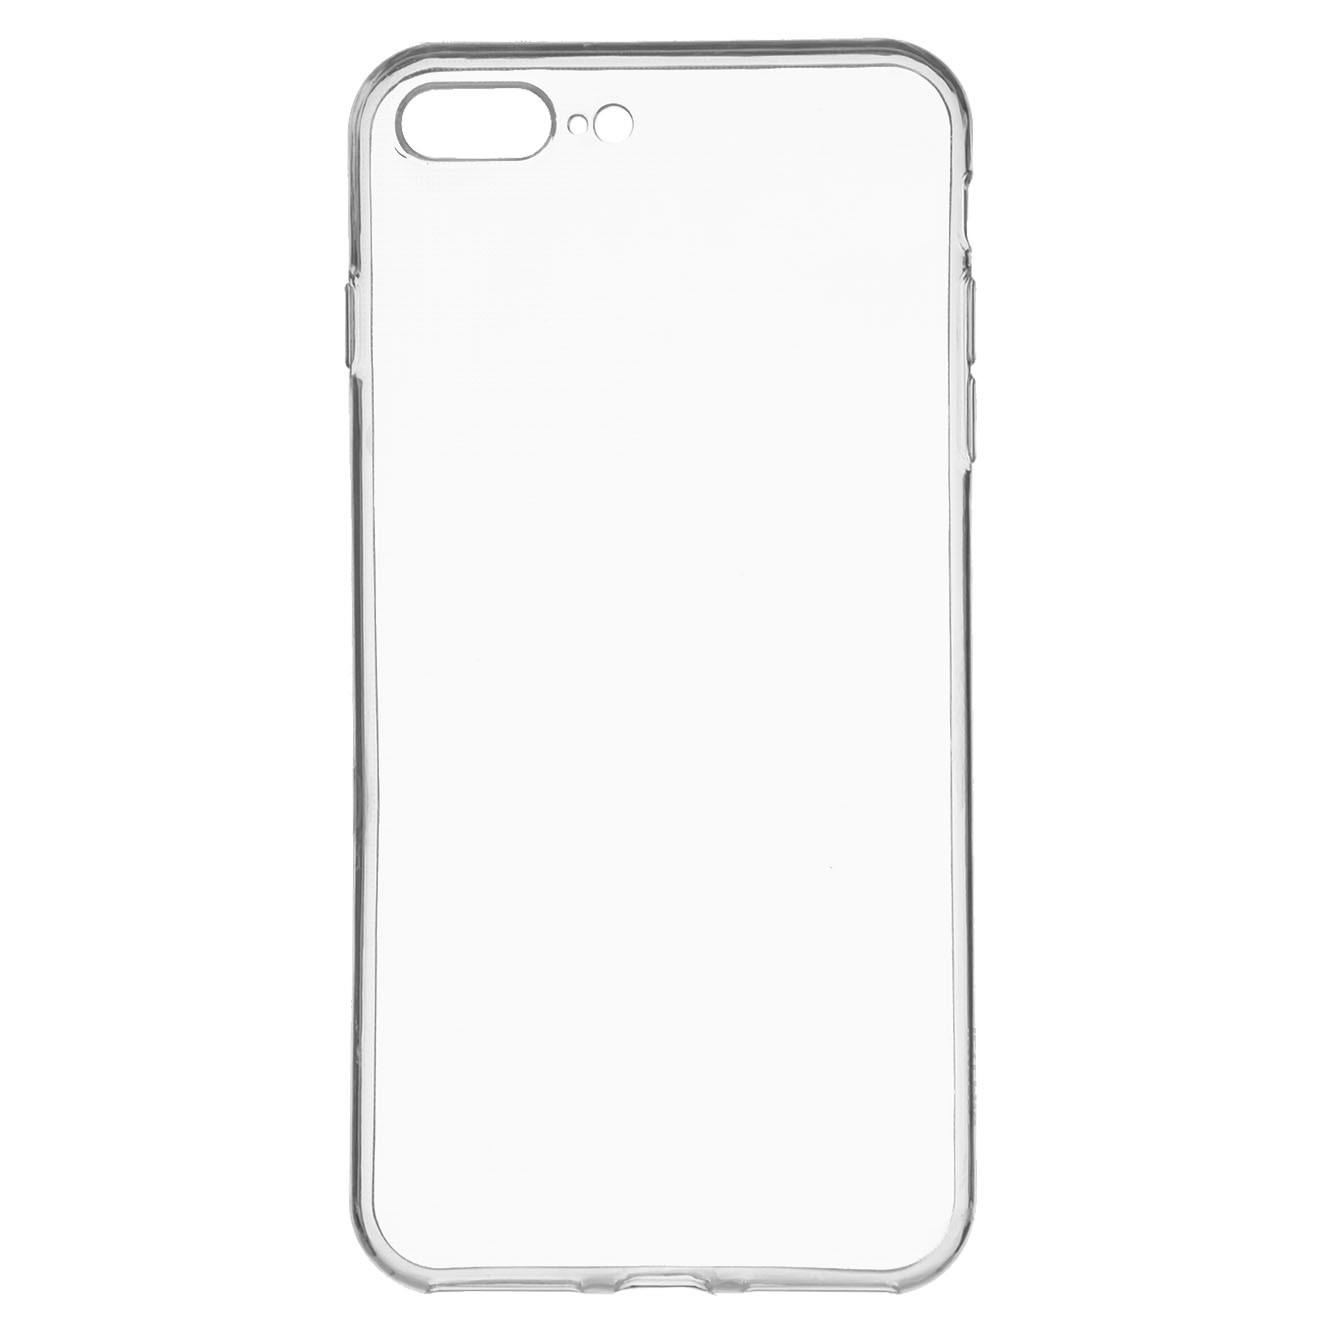 Funda Carcasa transparente silicona iPhone 7 Plus / 8 Plus